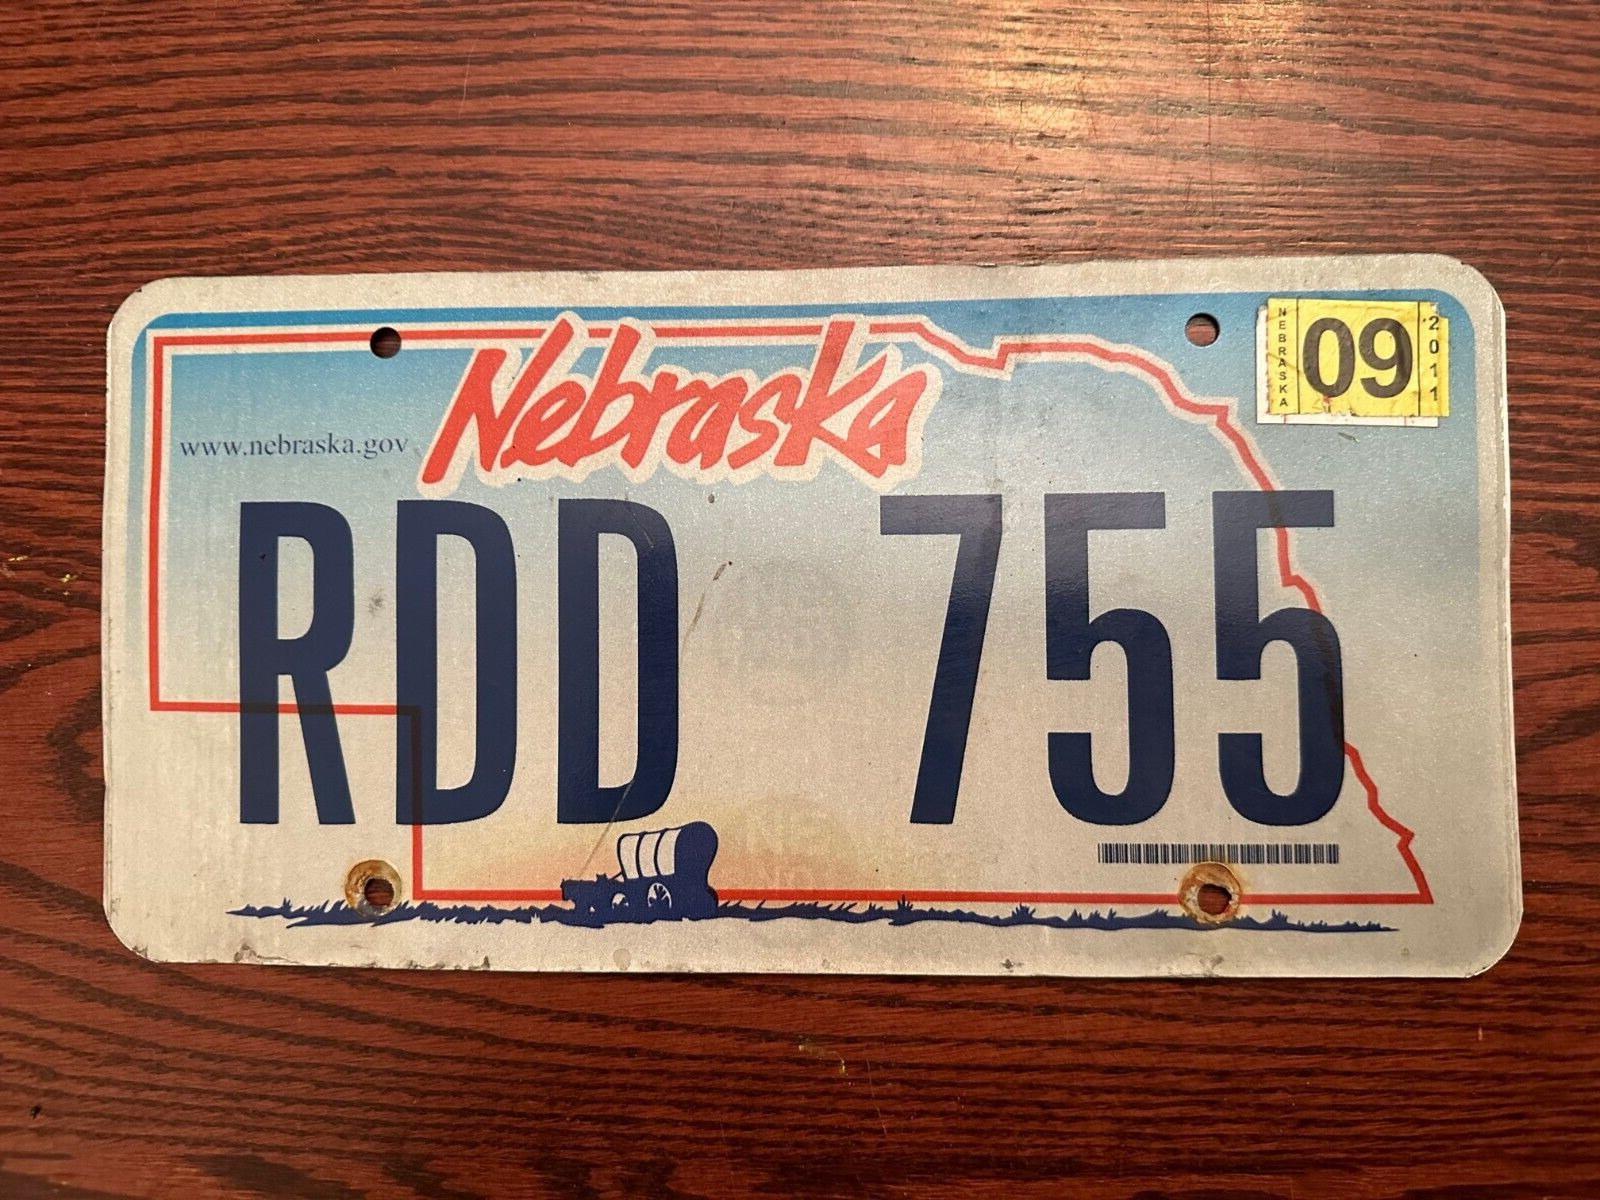 2011 Nebraska License Plate RDD 755 NE USA Authentic Metal September